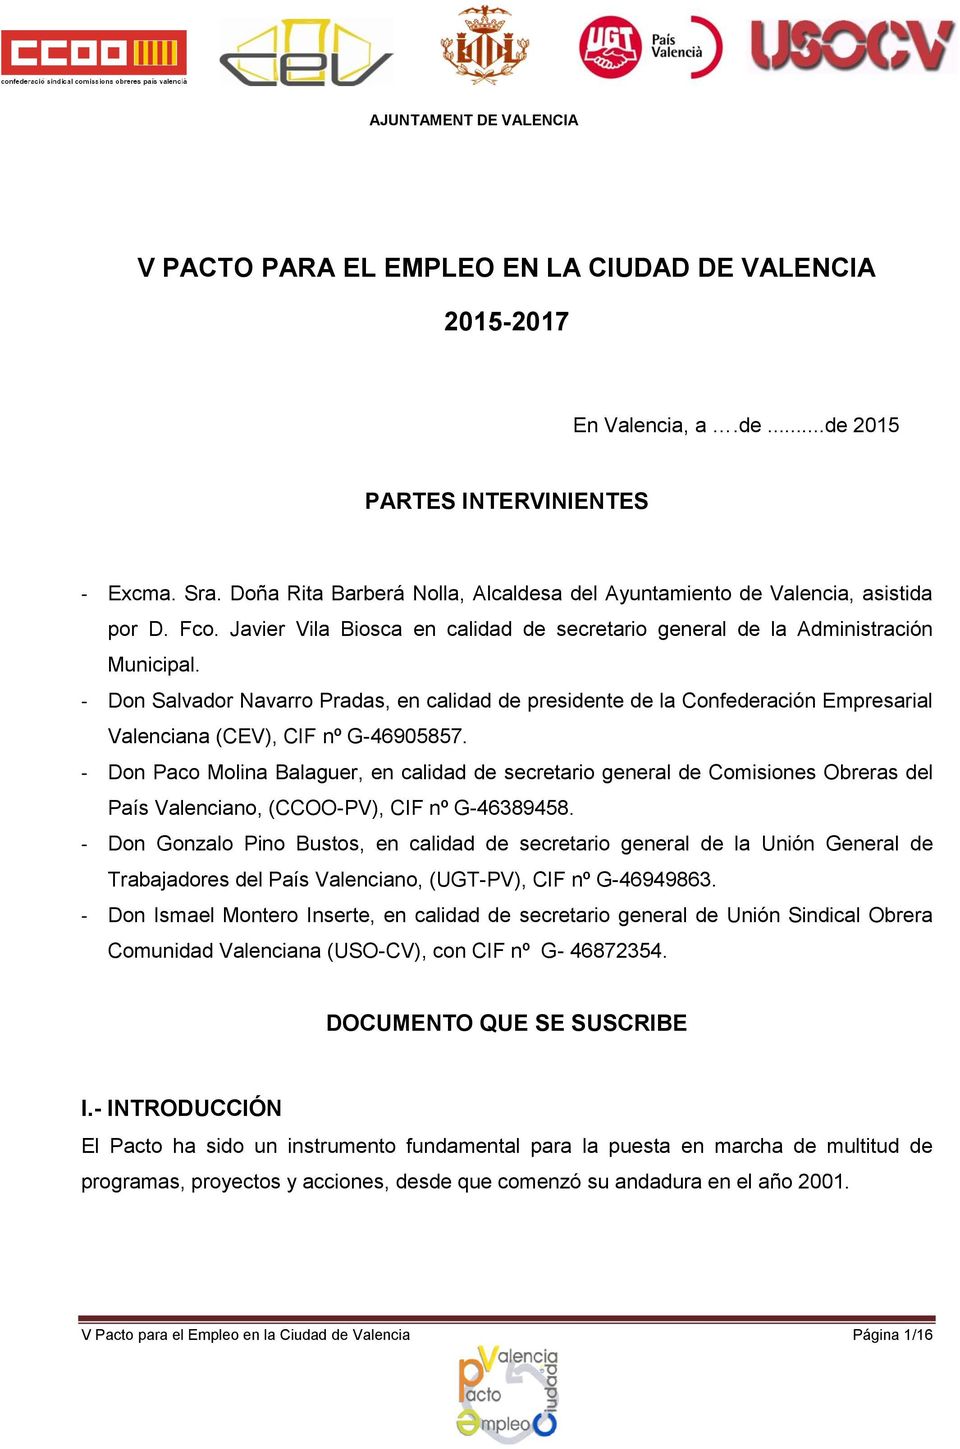 - Don Salvador Navarro Pradas, en calidad de presidente de la Confederación Empresarial Valenciana (CEV), CIF nº G-46905857.